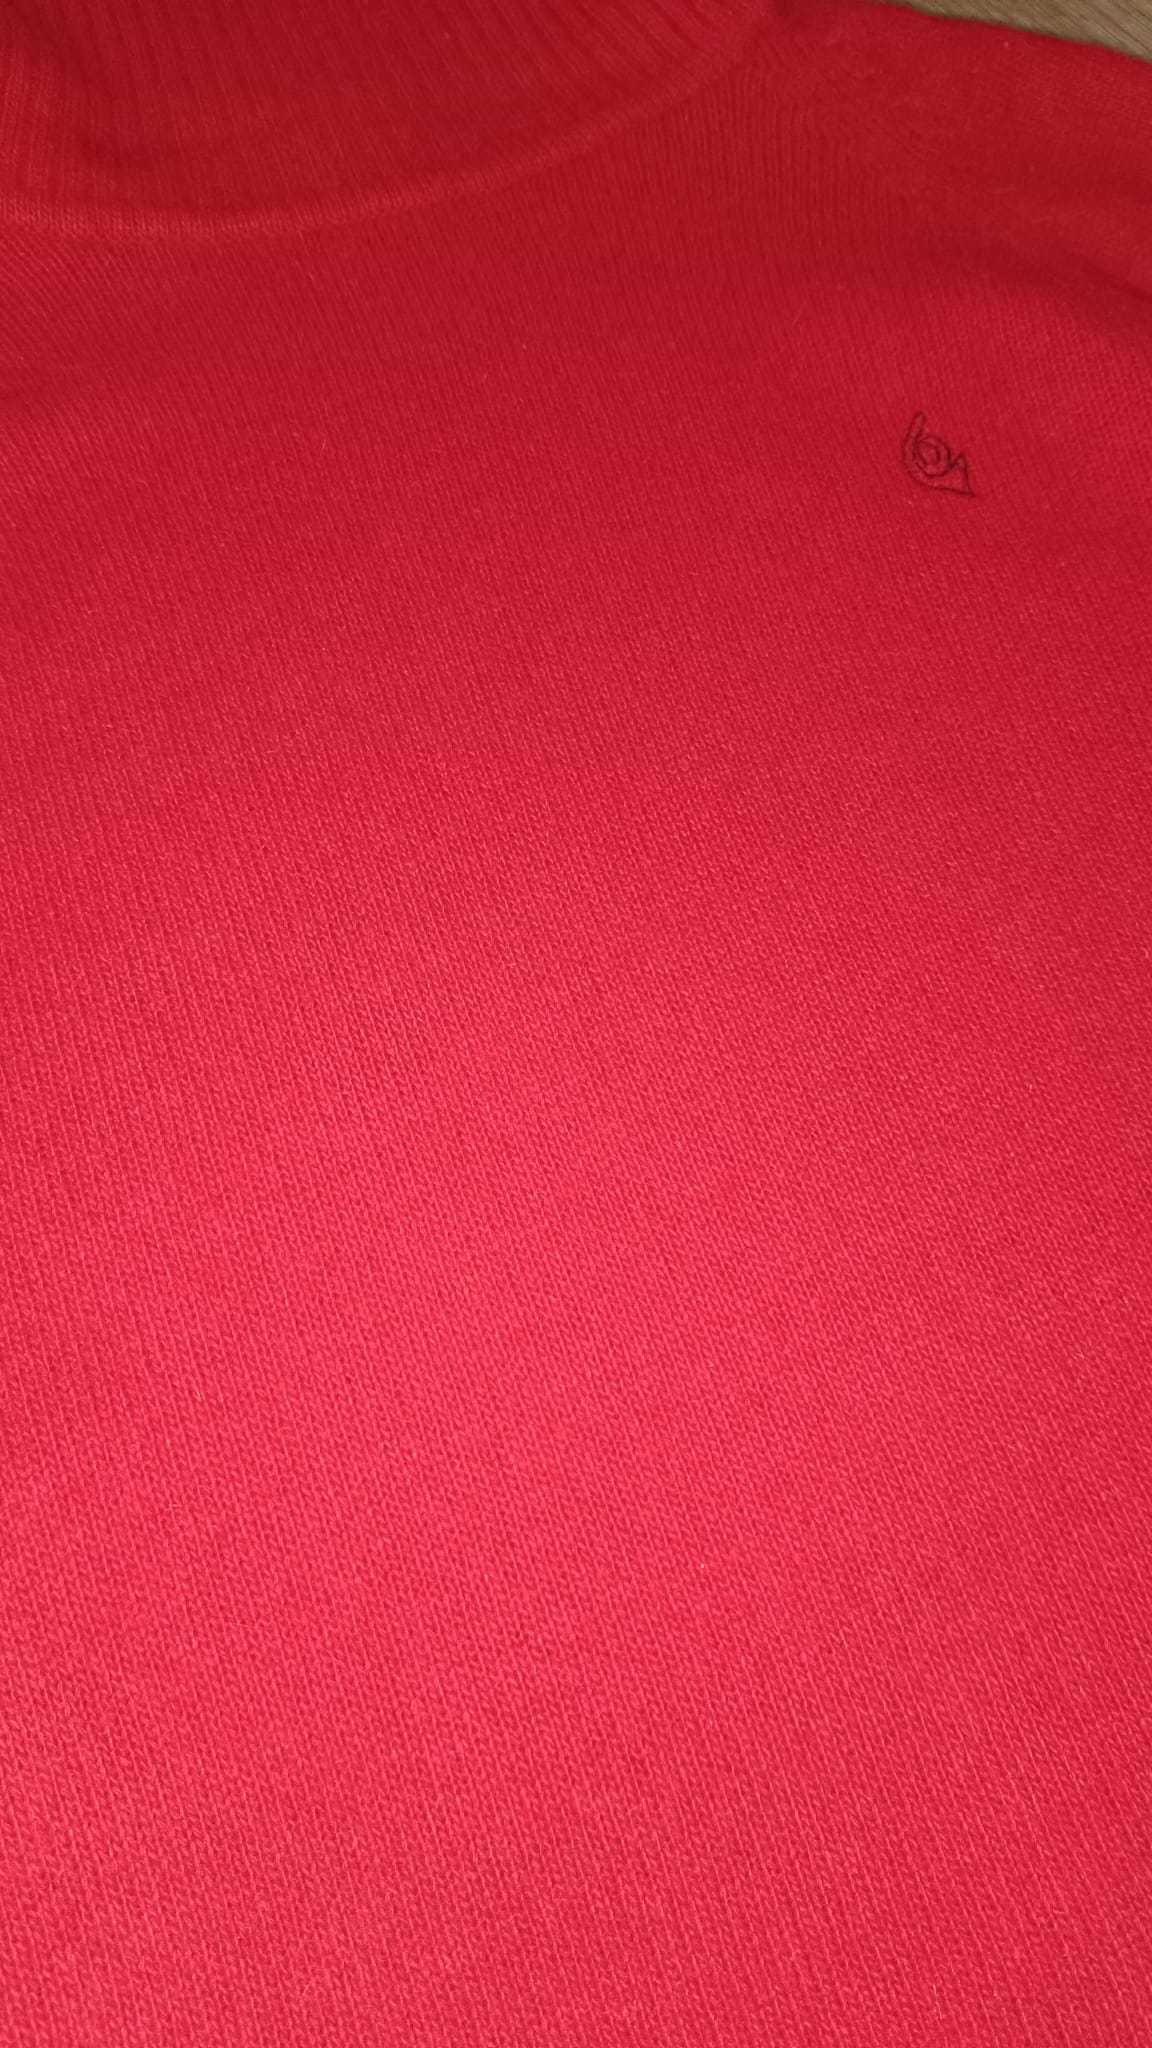 Sweter z golfem wełniany czerwony XS S M angora czerwień golf